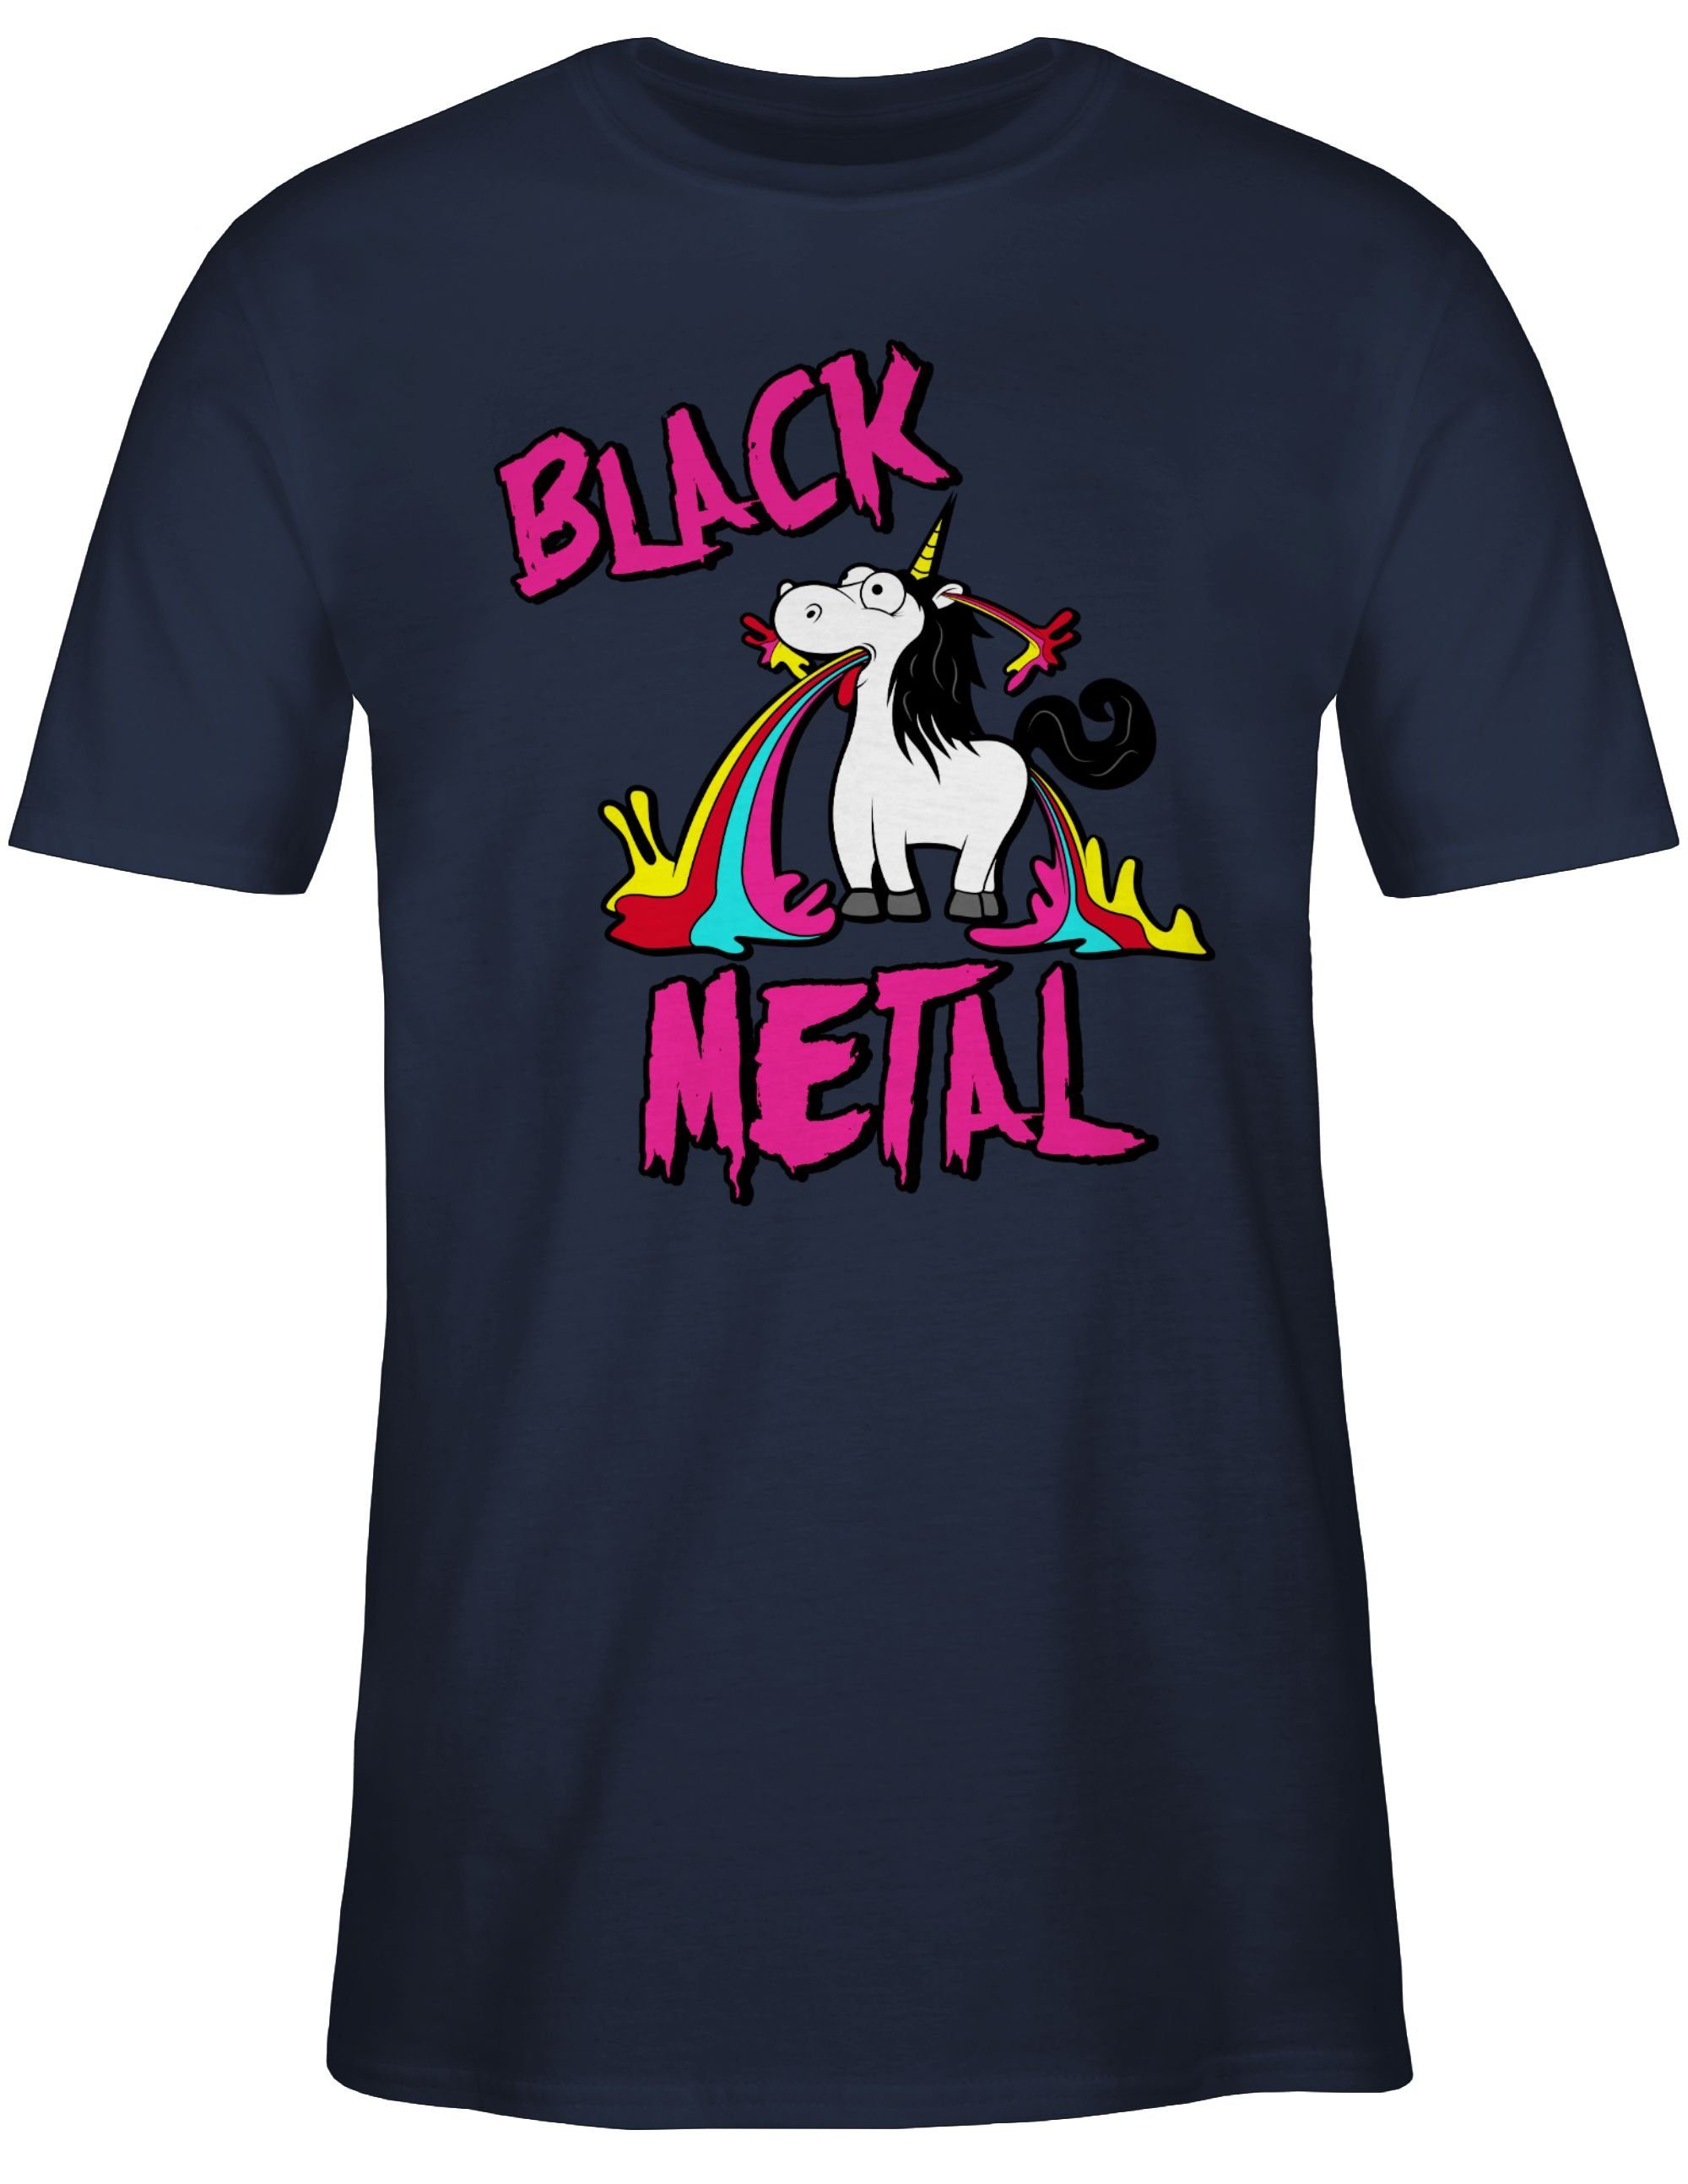 Geschenk 2 Einhorn Metal Einhorn T-Shirt Shirtracer Navy Black Blau